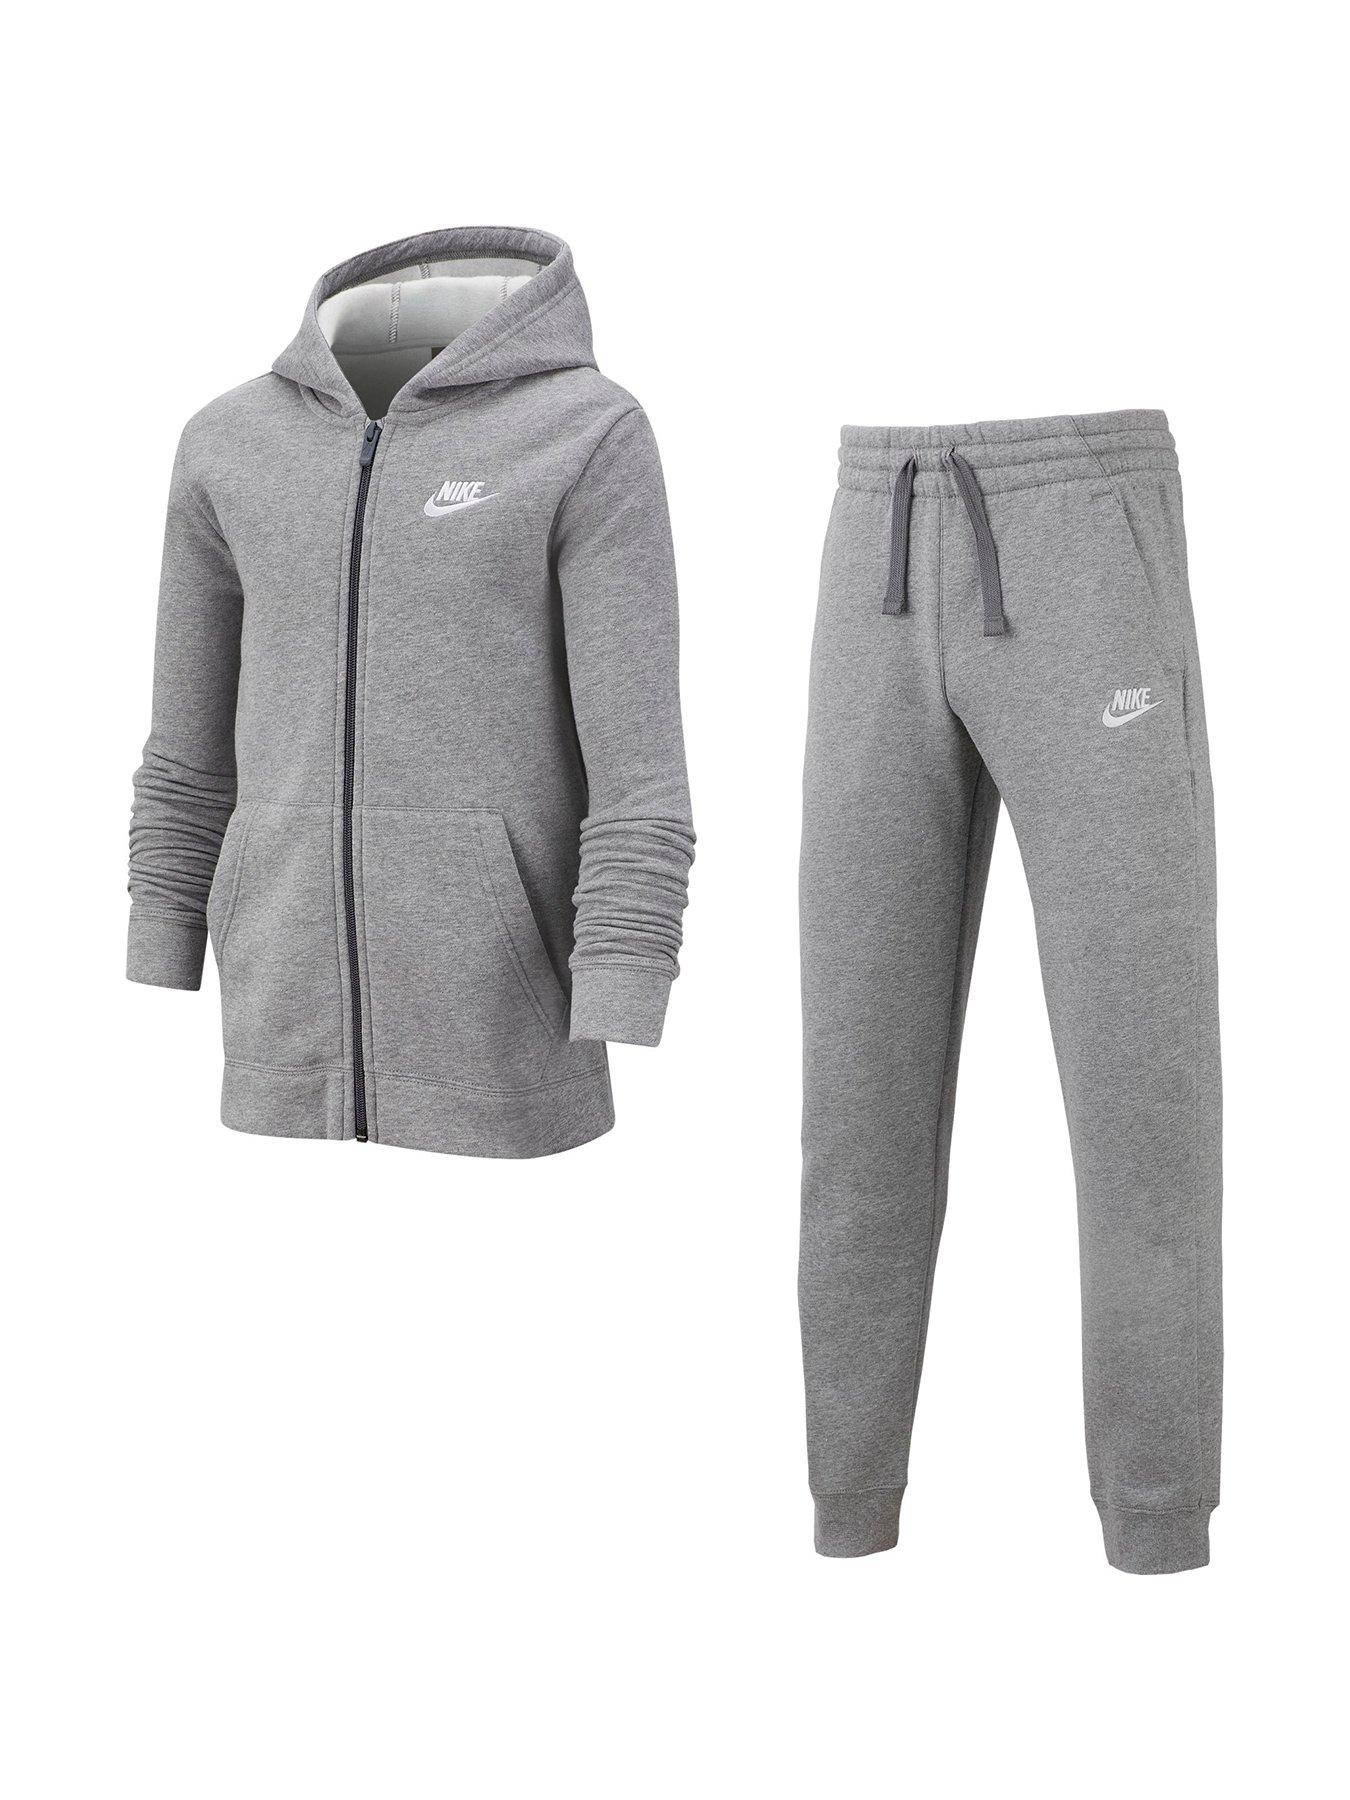 Sportswear Sportswear Kids Core Tracksuit Jogger Set - Dark Grey